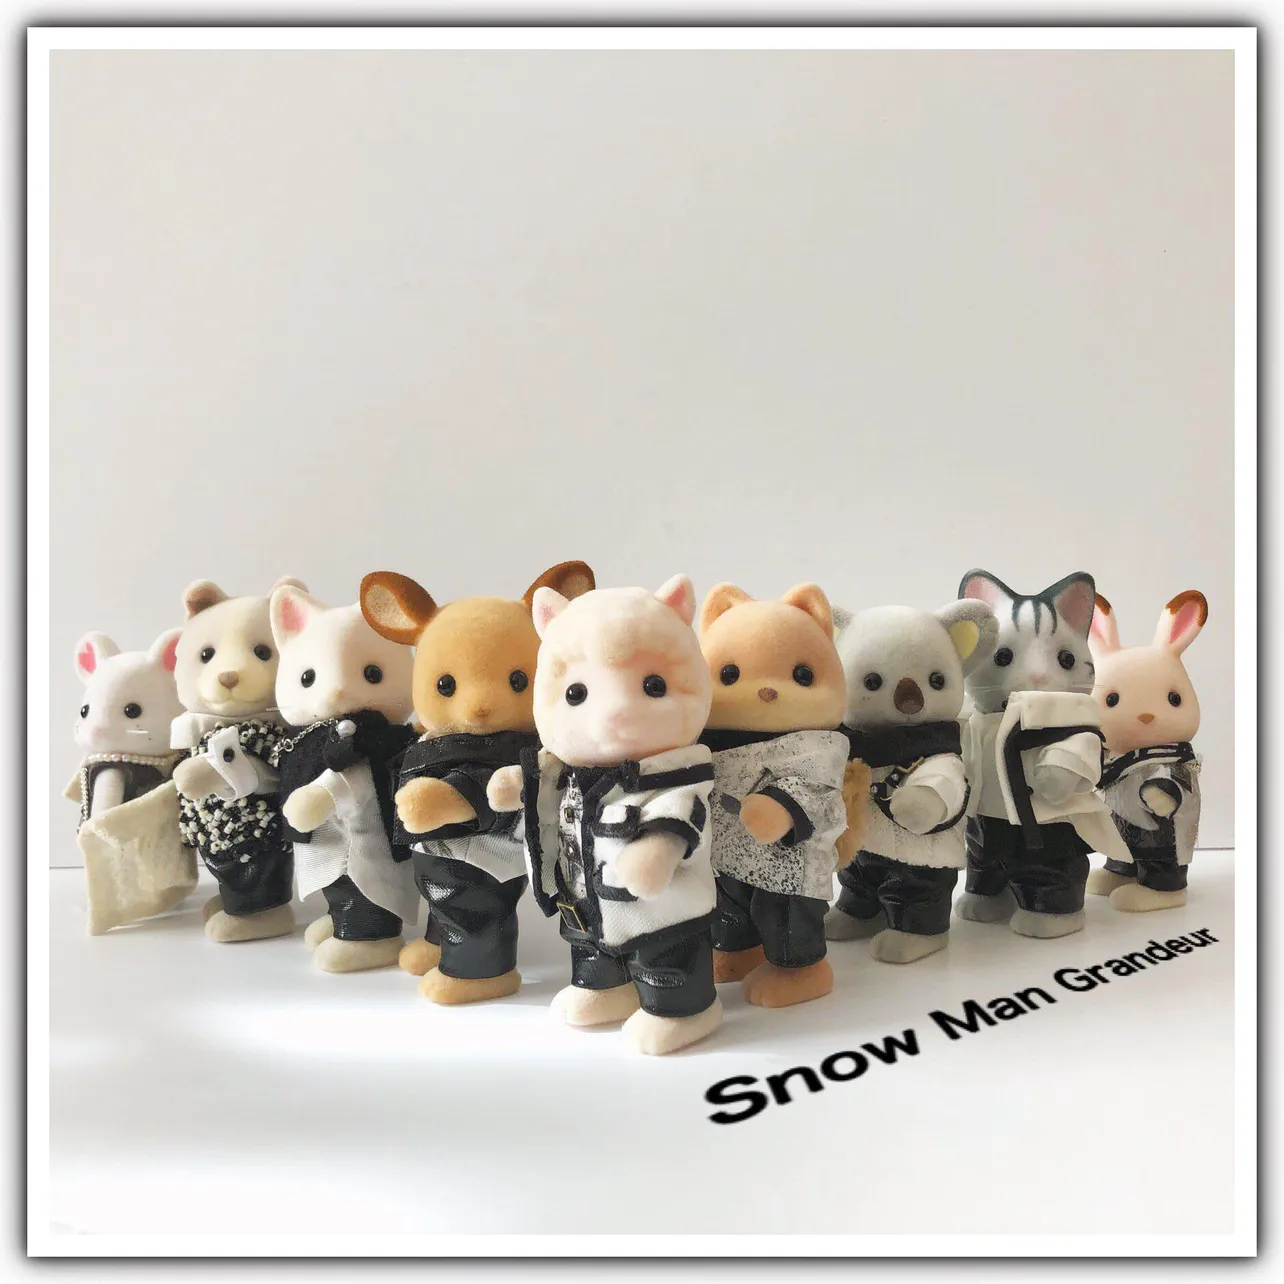 Snow Man 3rdシングル「Grandeur」通常盤ジャケットを再現